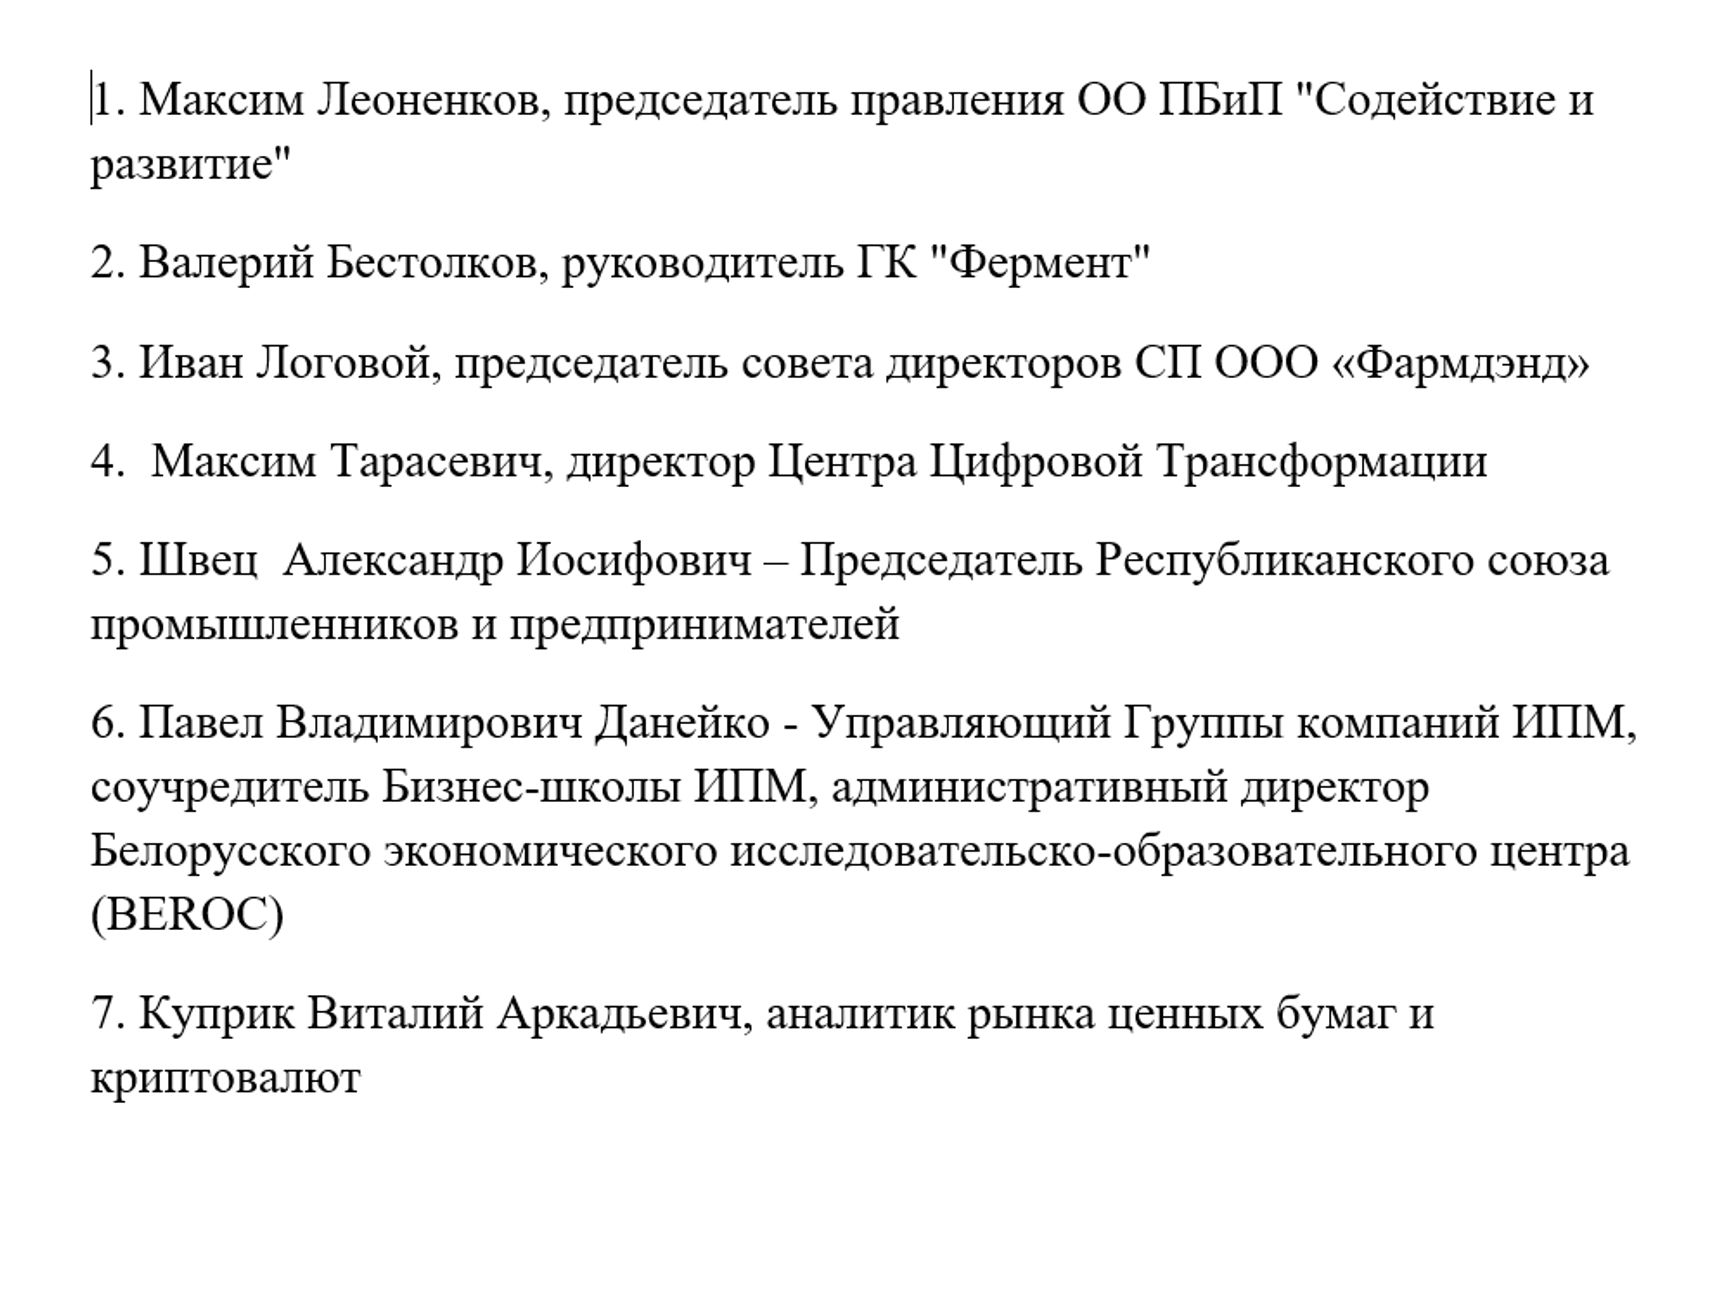 В документе в названии компании Ивана Логового "Фармлэнд" допущена опечатка